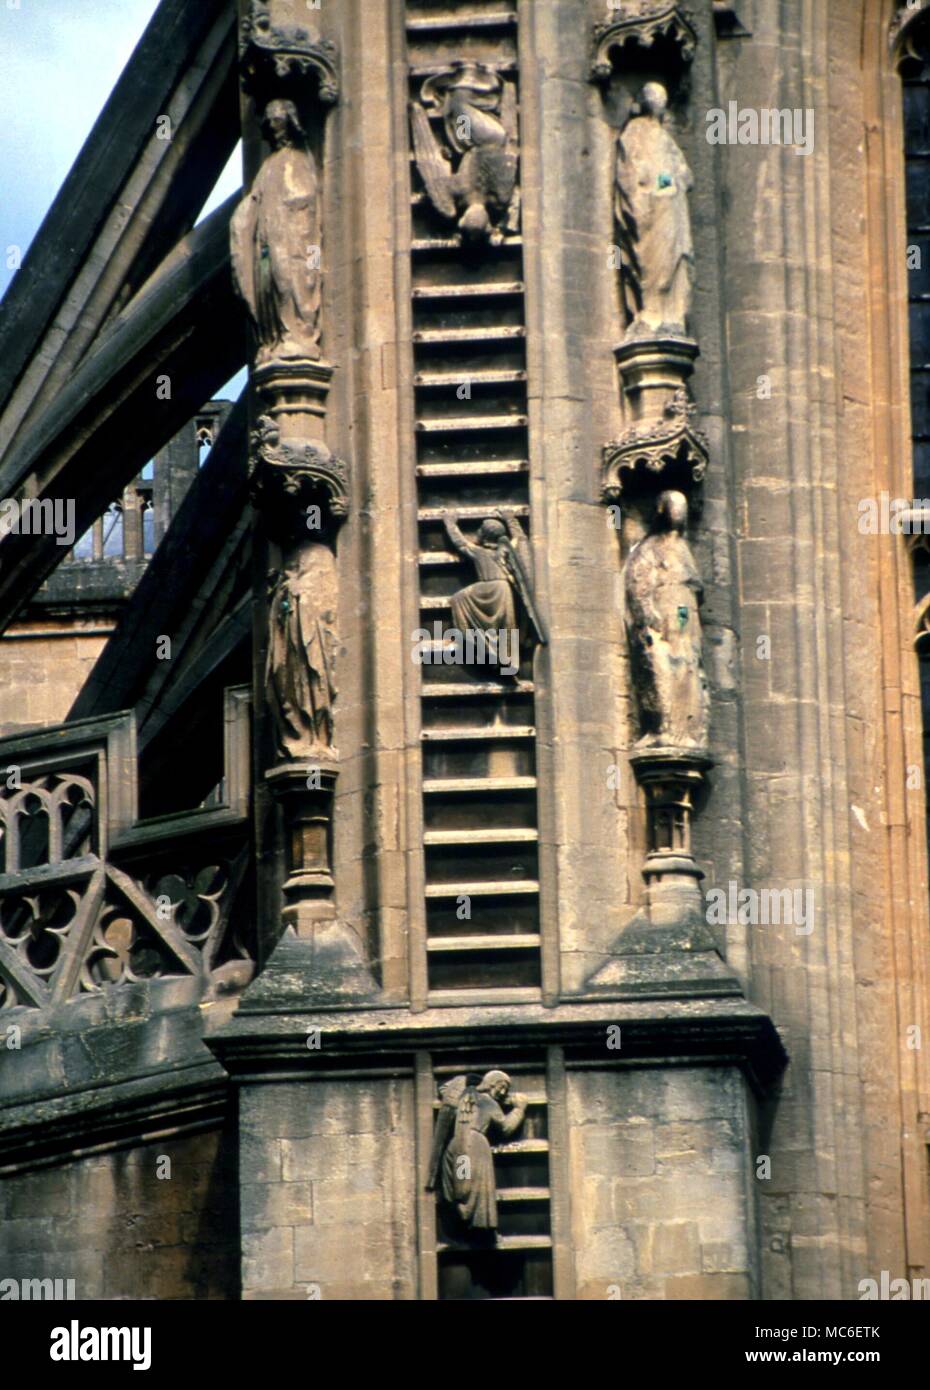 Los Ángeles - Ángeles ascendiendo y descendiendo la escalera conjunto twixt el cielo y la tierra. Detalle de la fachada esculpida de la Abadía de Bath, Iglesia del siglo XIV. Foto de stock